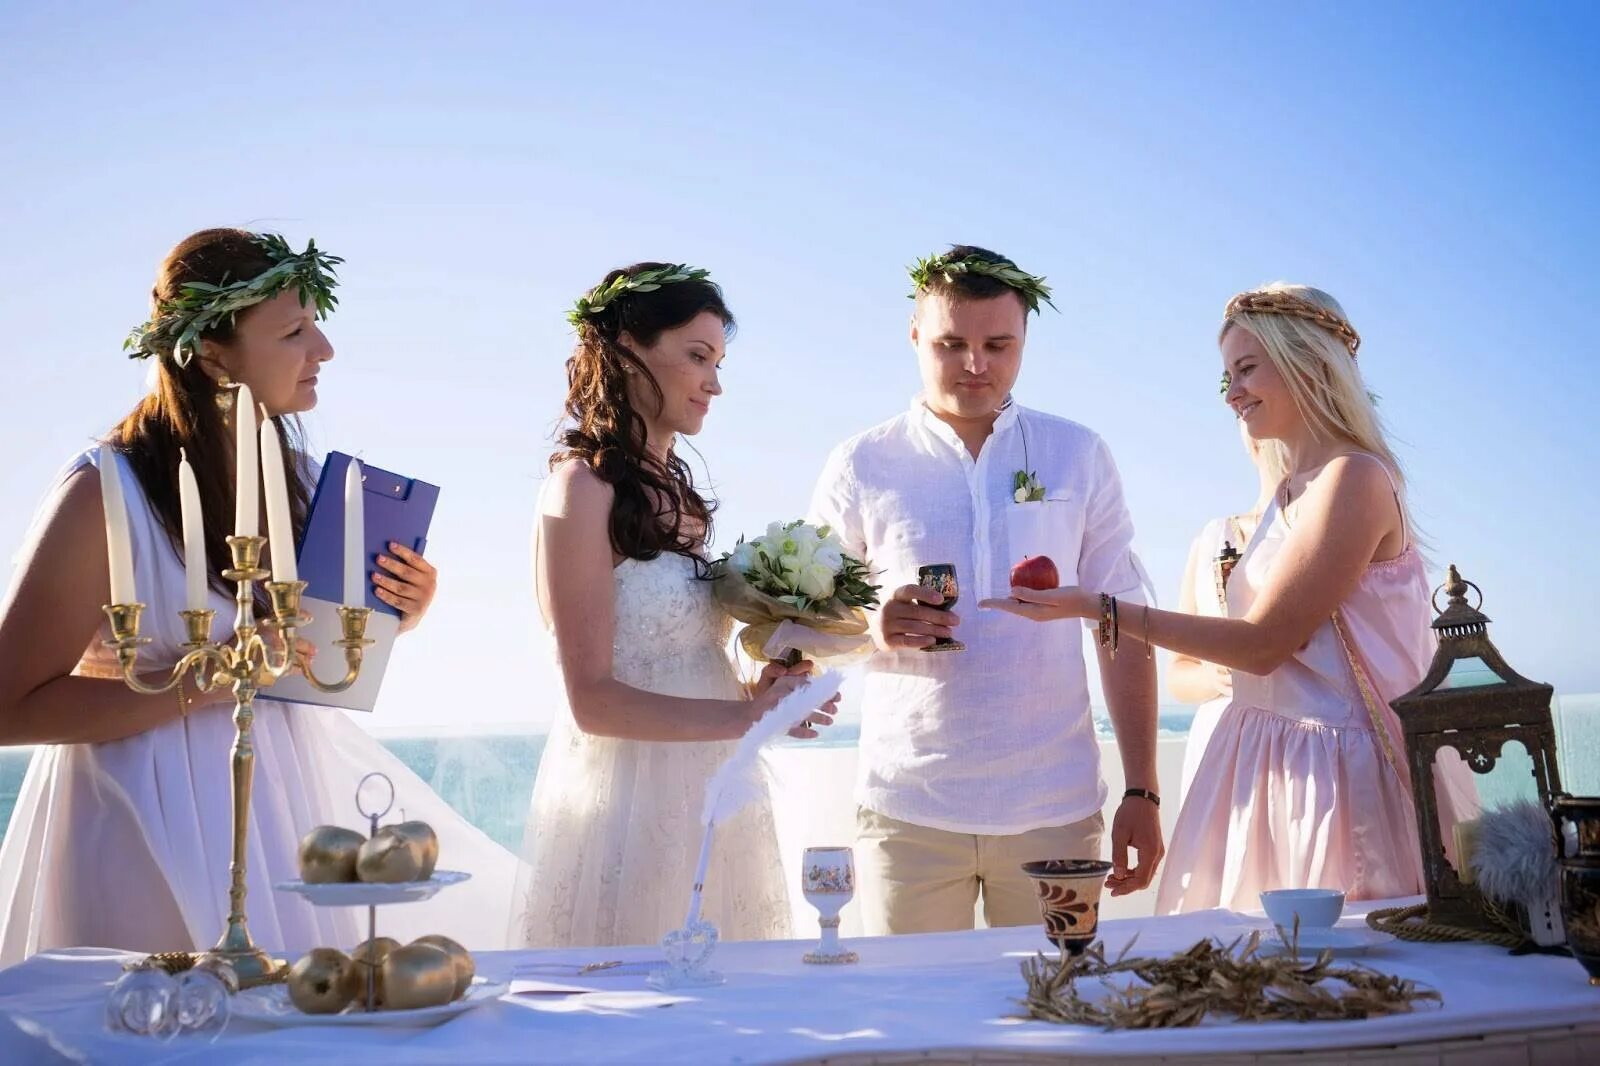 Греческое пара. Свадьба греков. Свадебные традиции в Греции. Свадьба в греческом стиле. Свадьба в античном стиле.